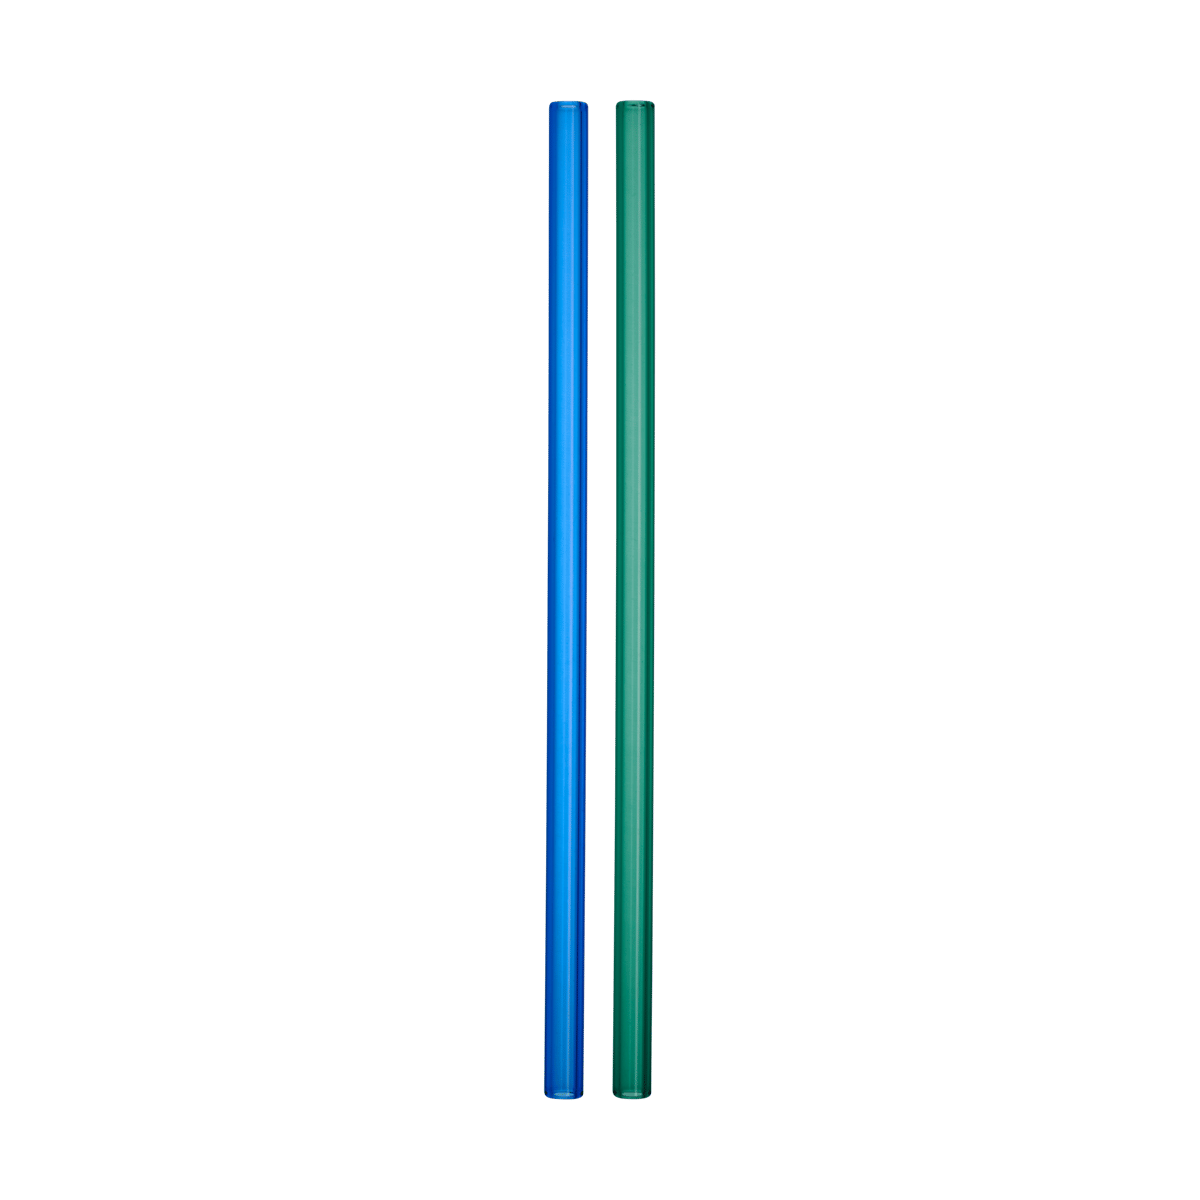 Kosta Boda Sipsavor sugerør 200 mm 2-pak Blå-grøn